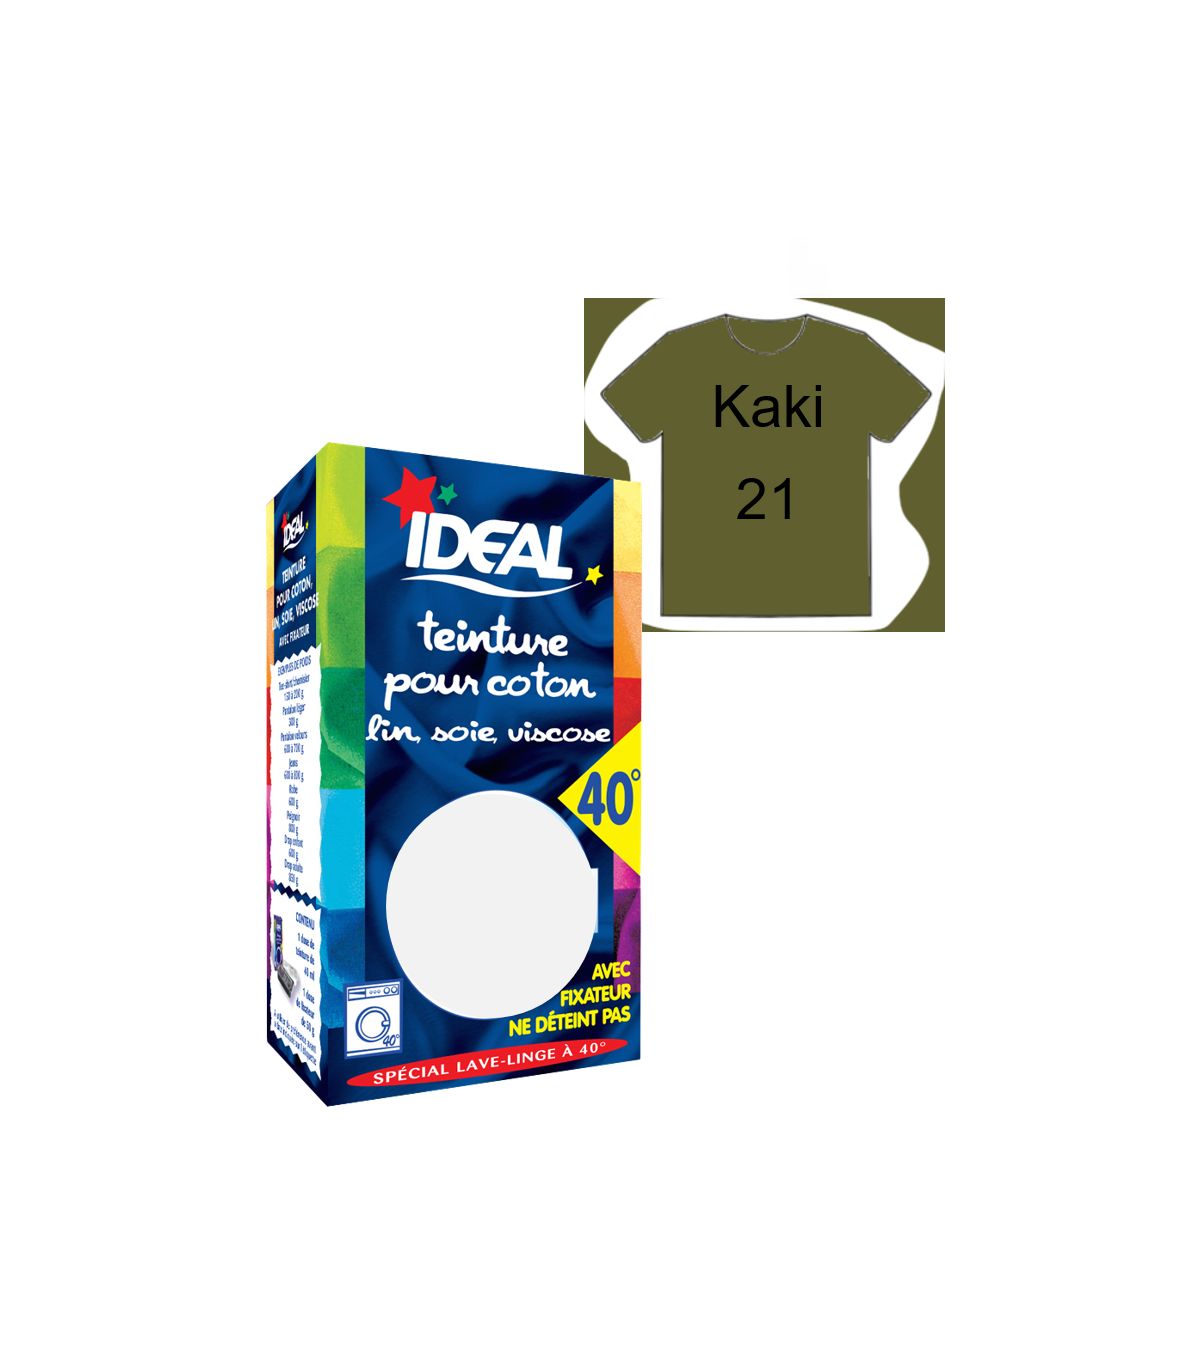 TEINTURE avec FIXATEUR TEXTILE TISSU KAKI 21 IDEAL vêtement coton soie